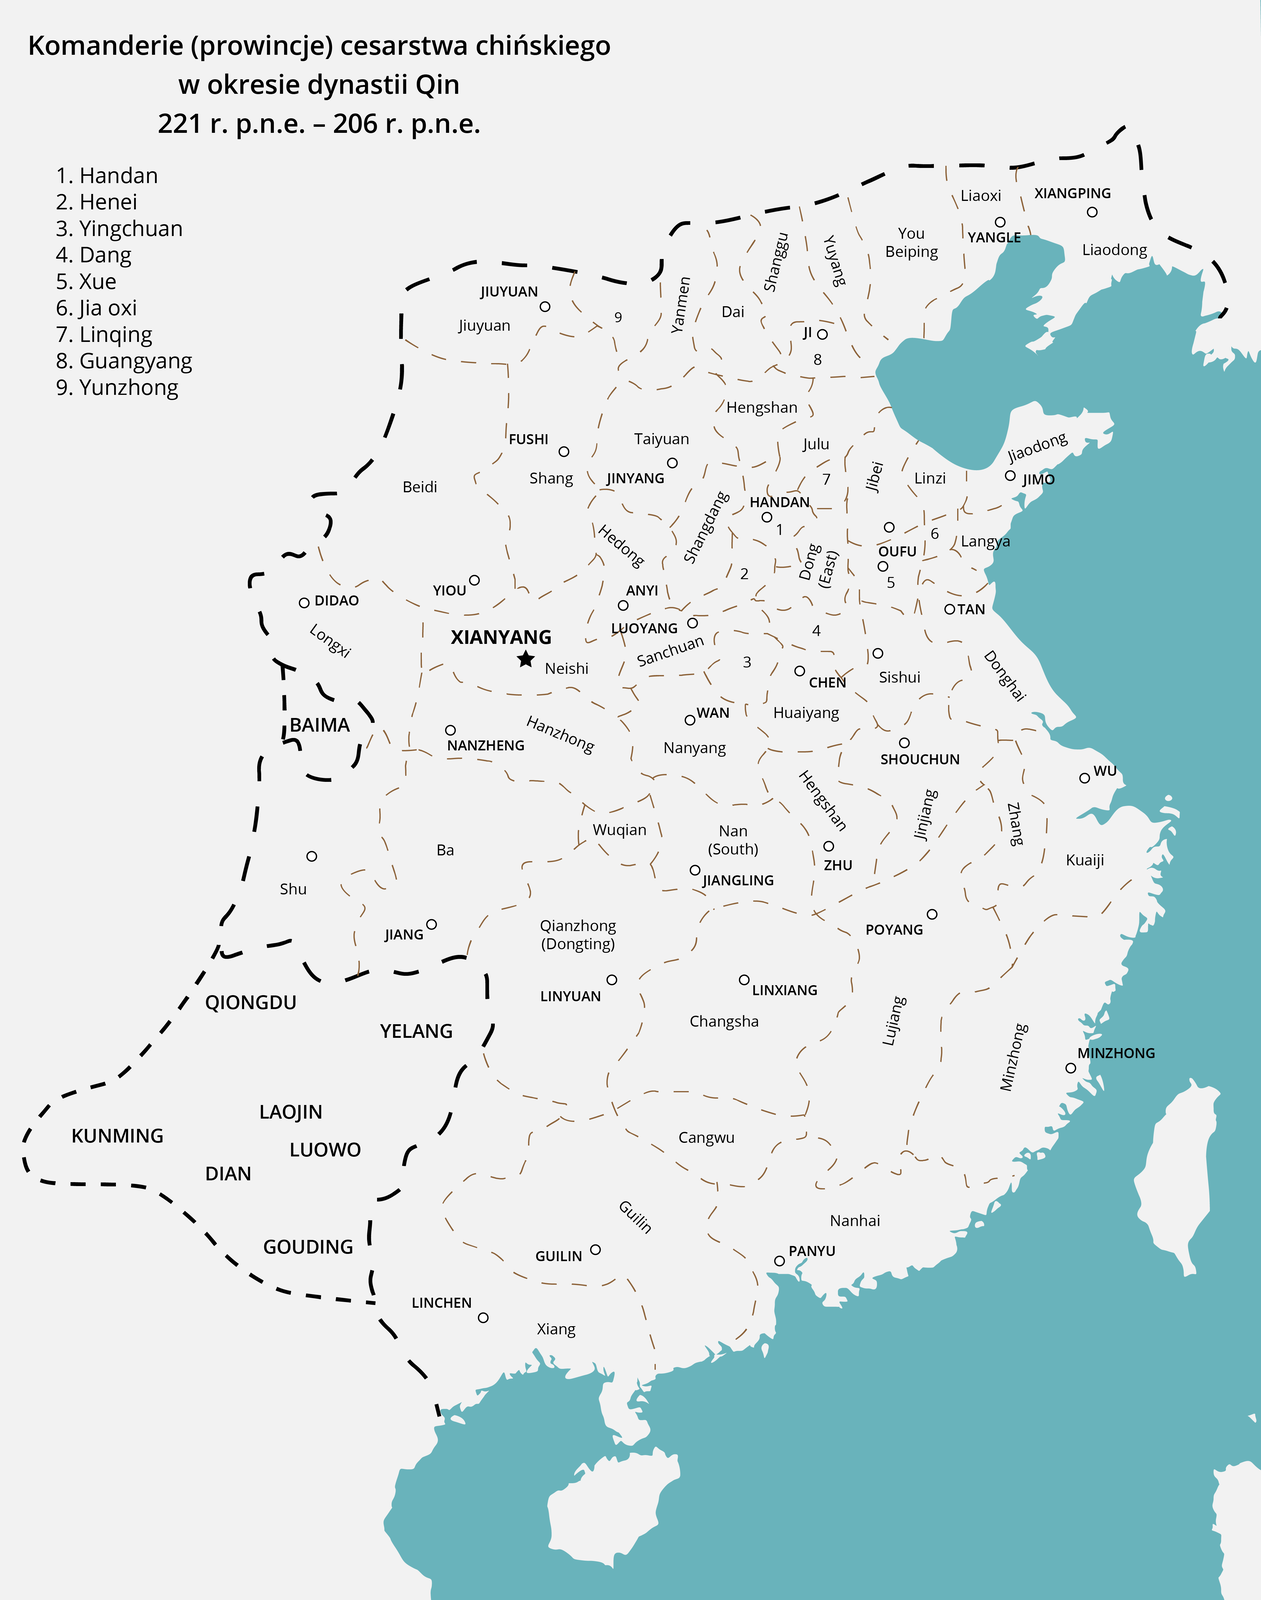 Mapa przedstawia Komanderie, prowincje cesarstwa chińskiego w okresie panowania dynastii Qin od 221 roku przed naszą erą do 206 r przed naszą erą. Są to: Handan, Henei, Yingchuan, Dang, Xue, Jia oxi, Linqing, Guangyang, Yunzhong.